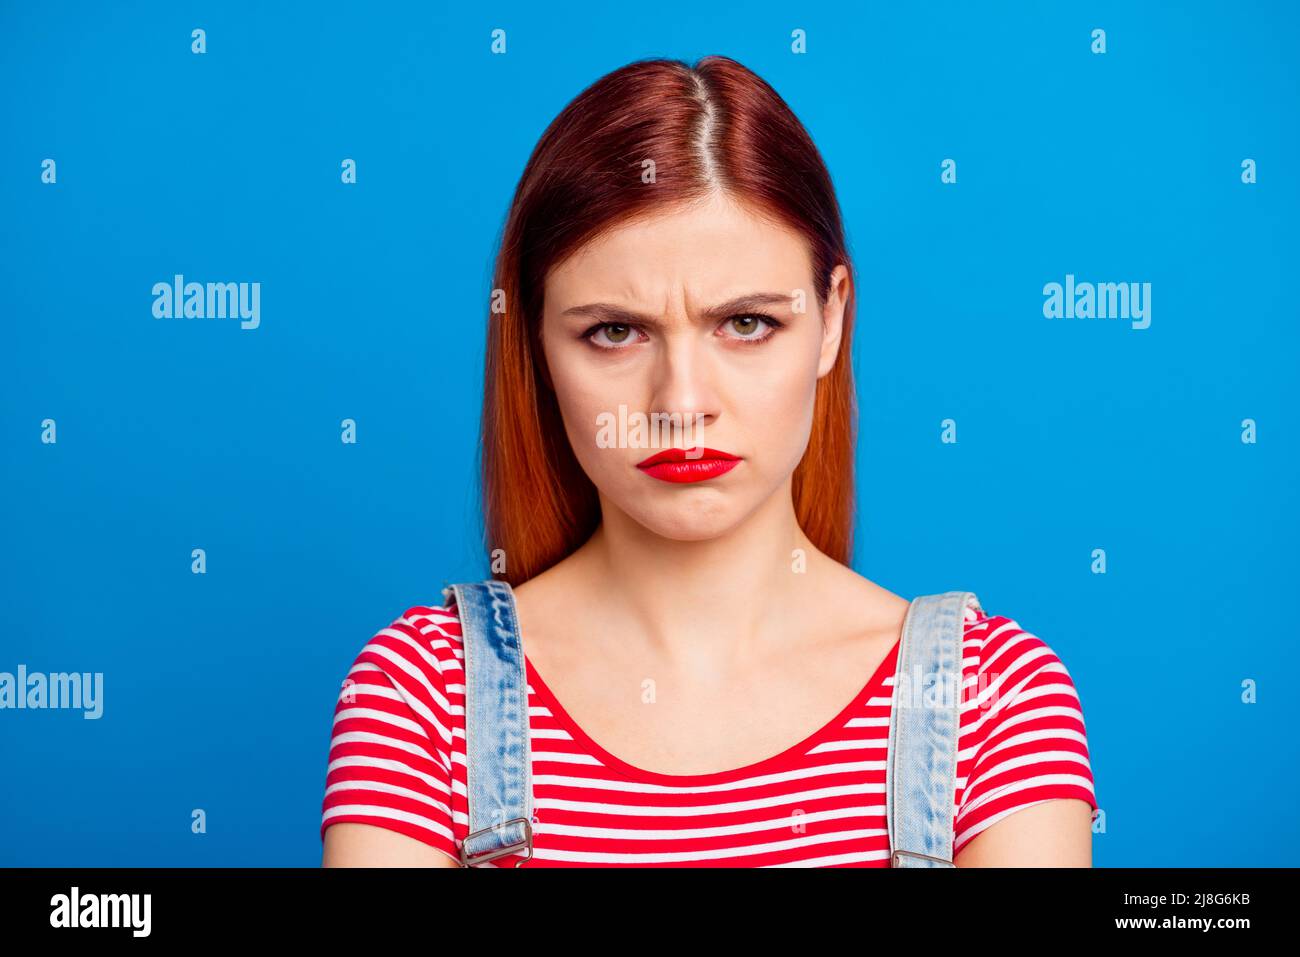 Portrait de jeune fille imsatisfaite visage sullen regarder caméra isolée sur fond bleu de couleur Banque D'Images